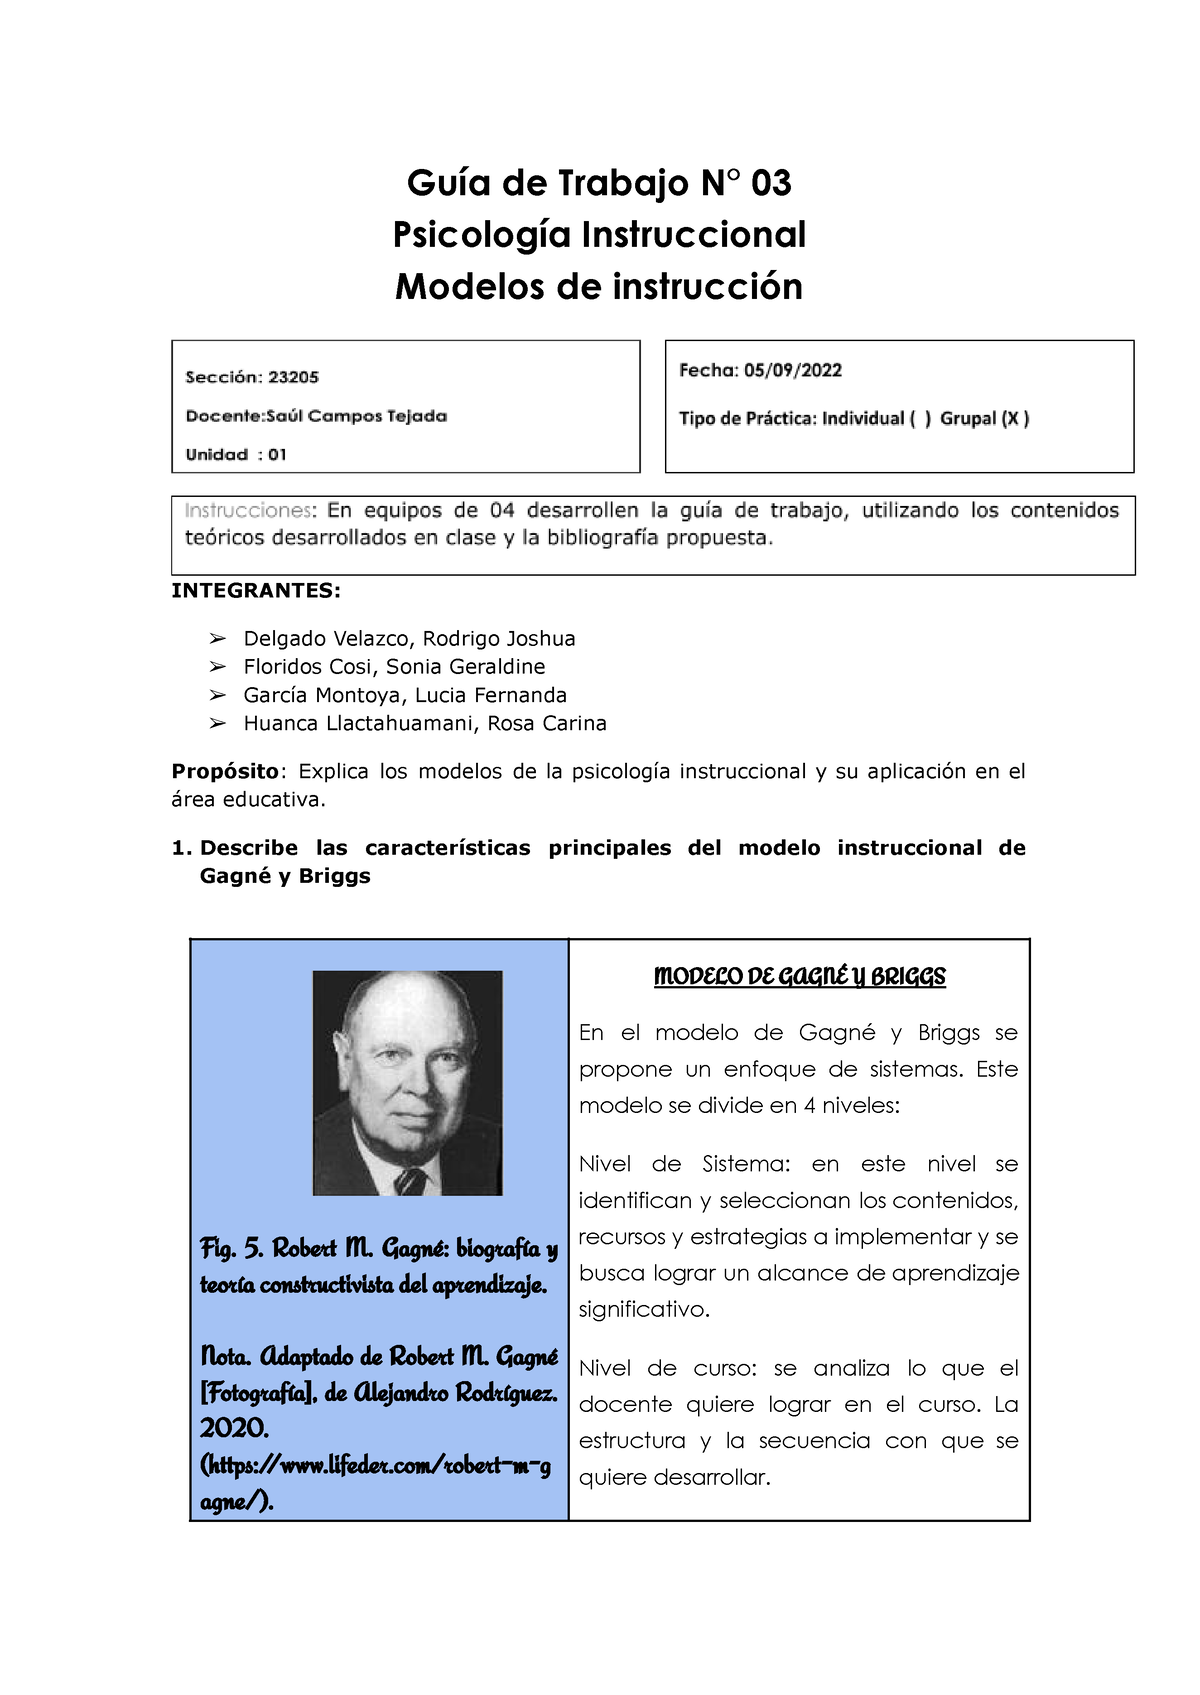 GUÍA DE Trabajo N°3 - asd - Guía de Trabajo N° 03 Psicología Instruccional  Modelos de instrucción - Studocu